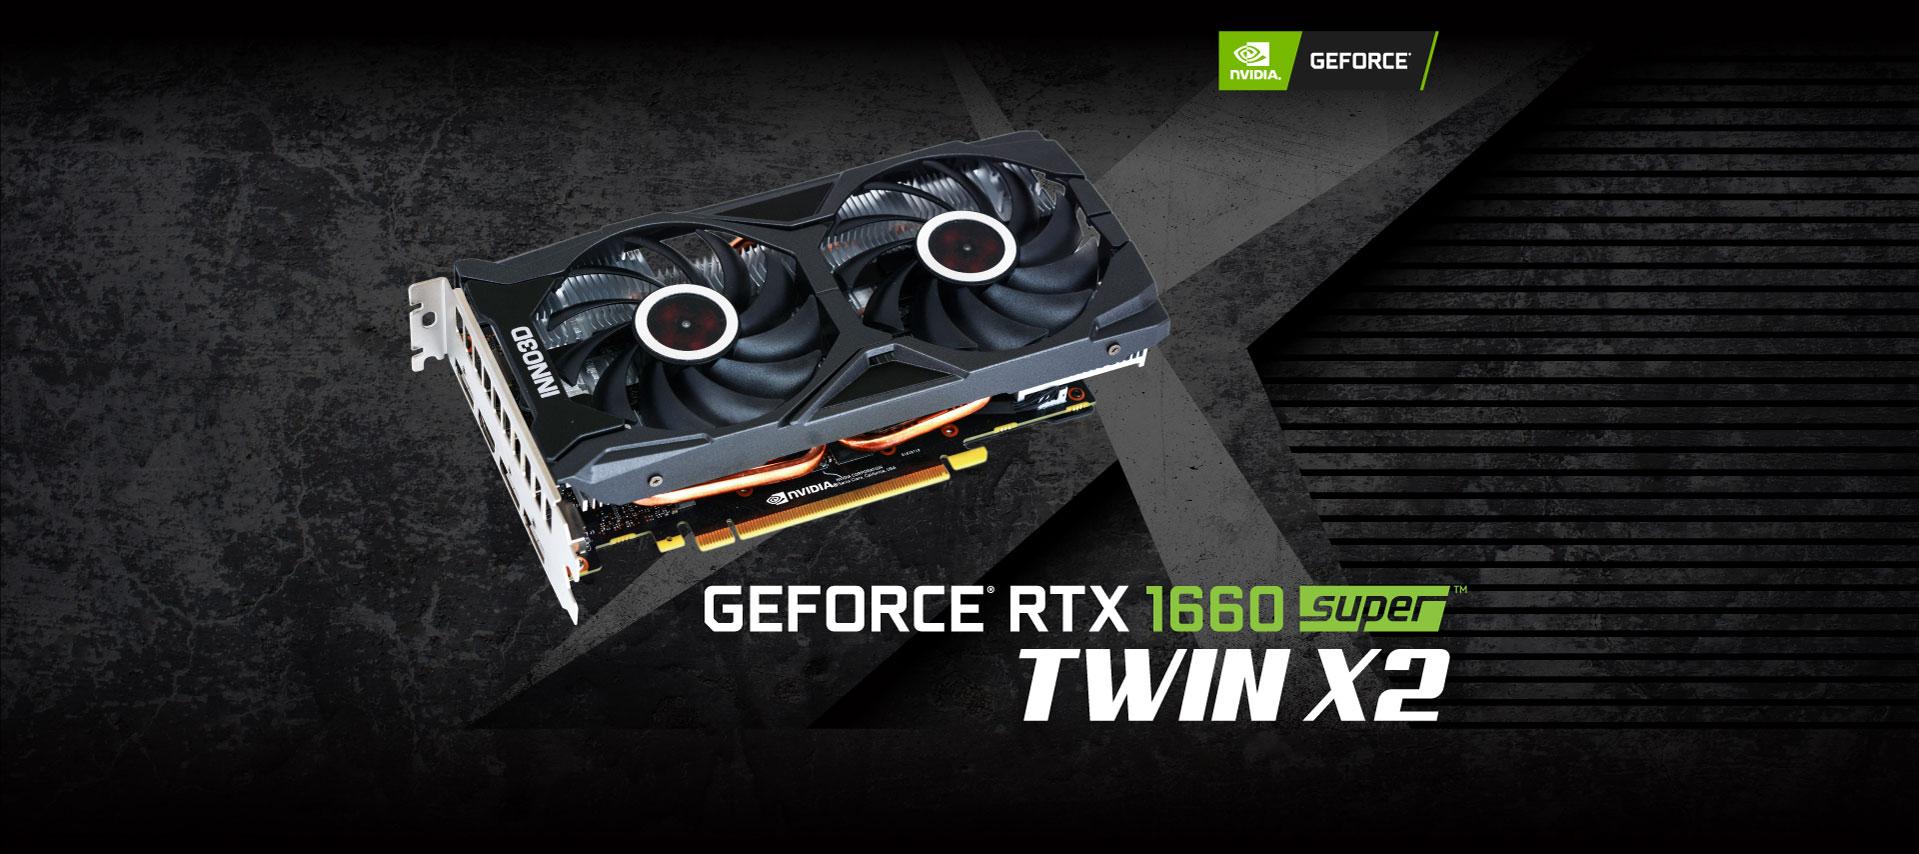 Inno3d GeForce GTX 1660 Super Twin X2 6GB GDDR6 192-bit Gaming Graphics Card